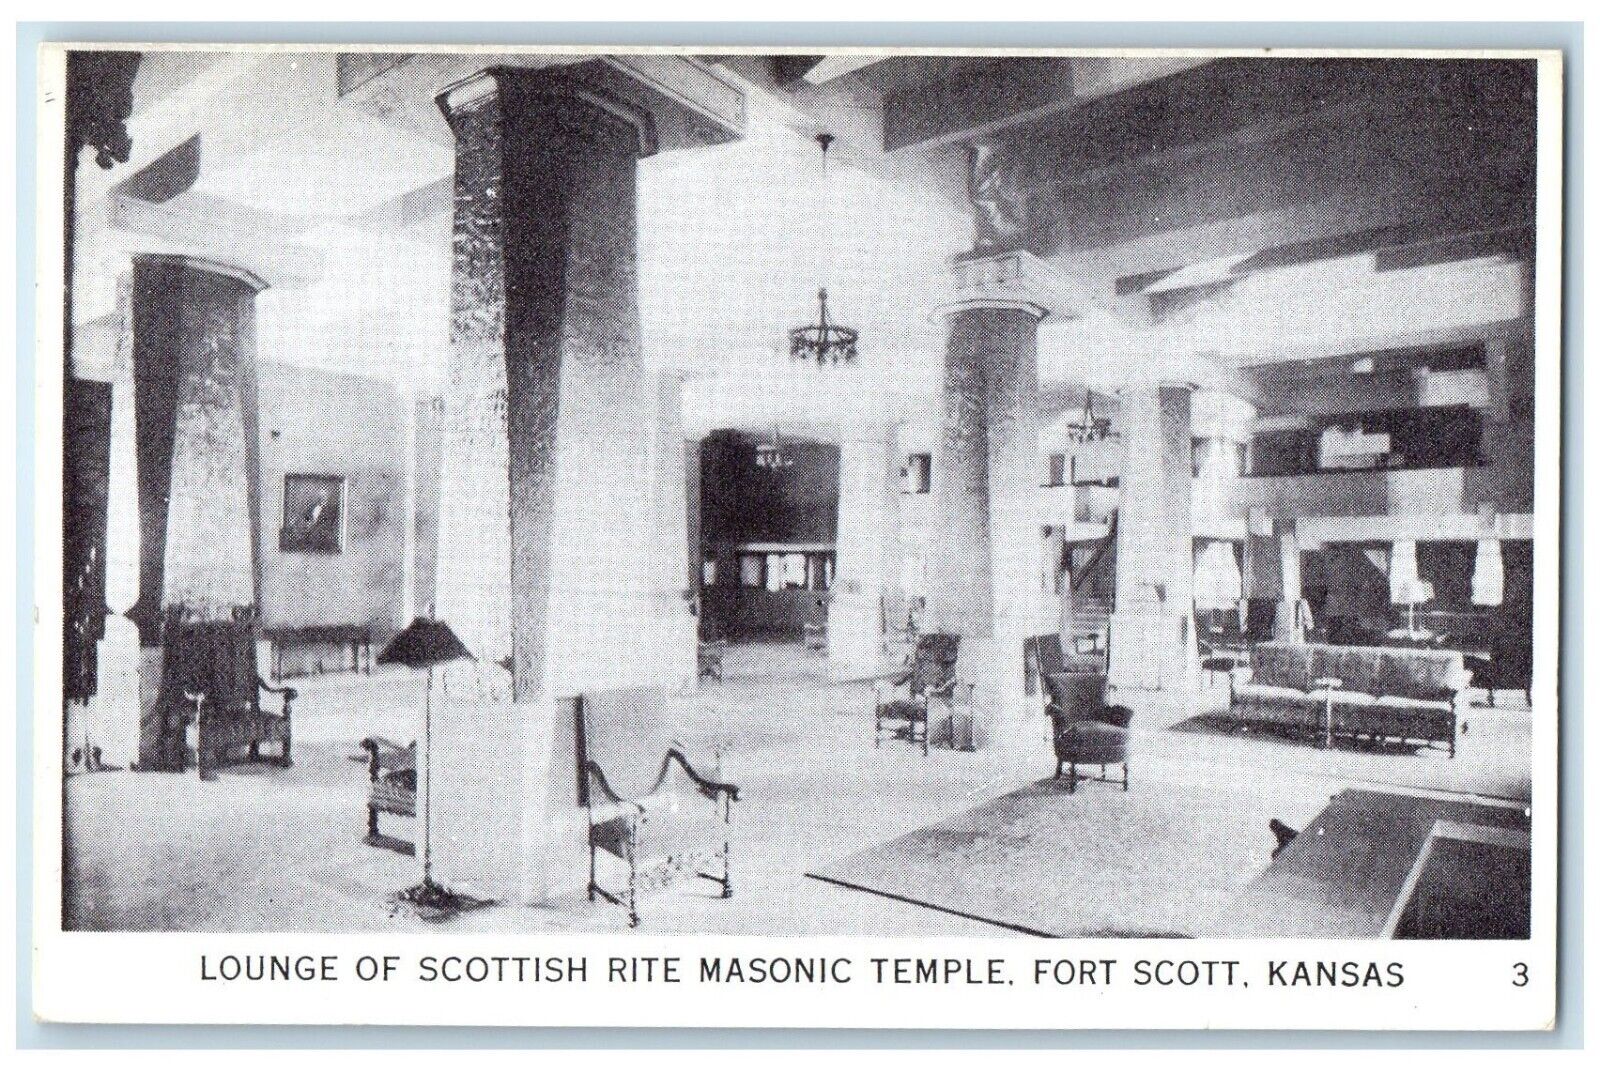 c1940 Lounge Scottish Rite Masonic Temple Fort Scott Kansas KS Vintage Postcard